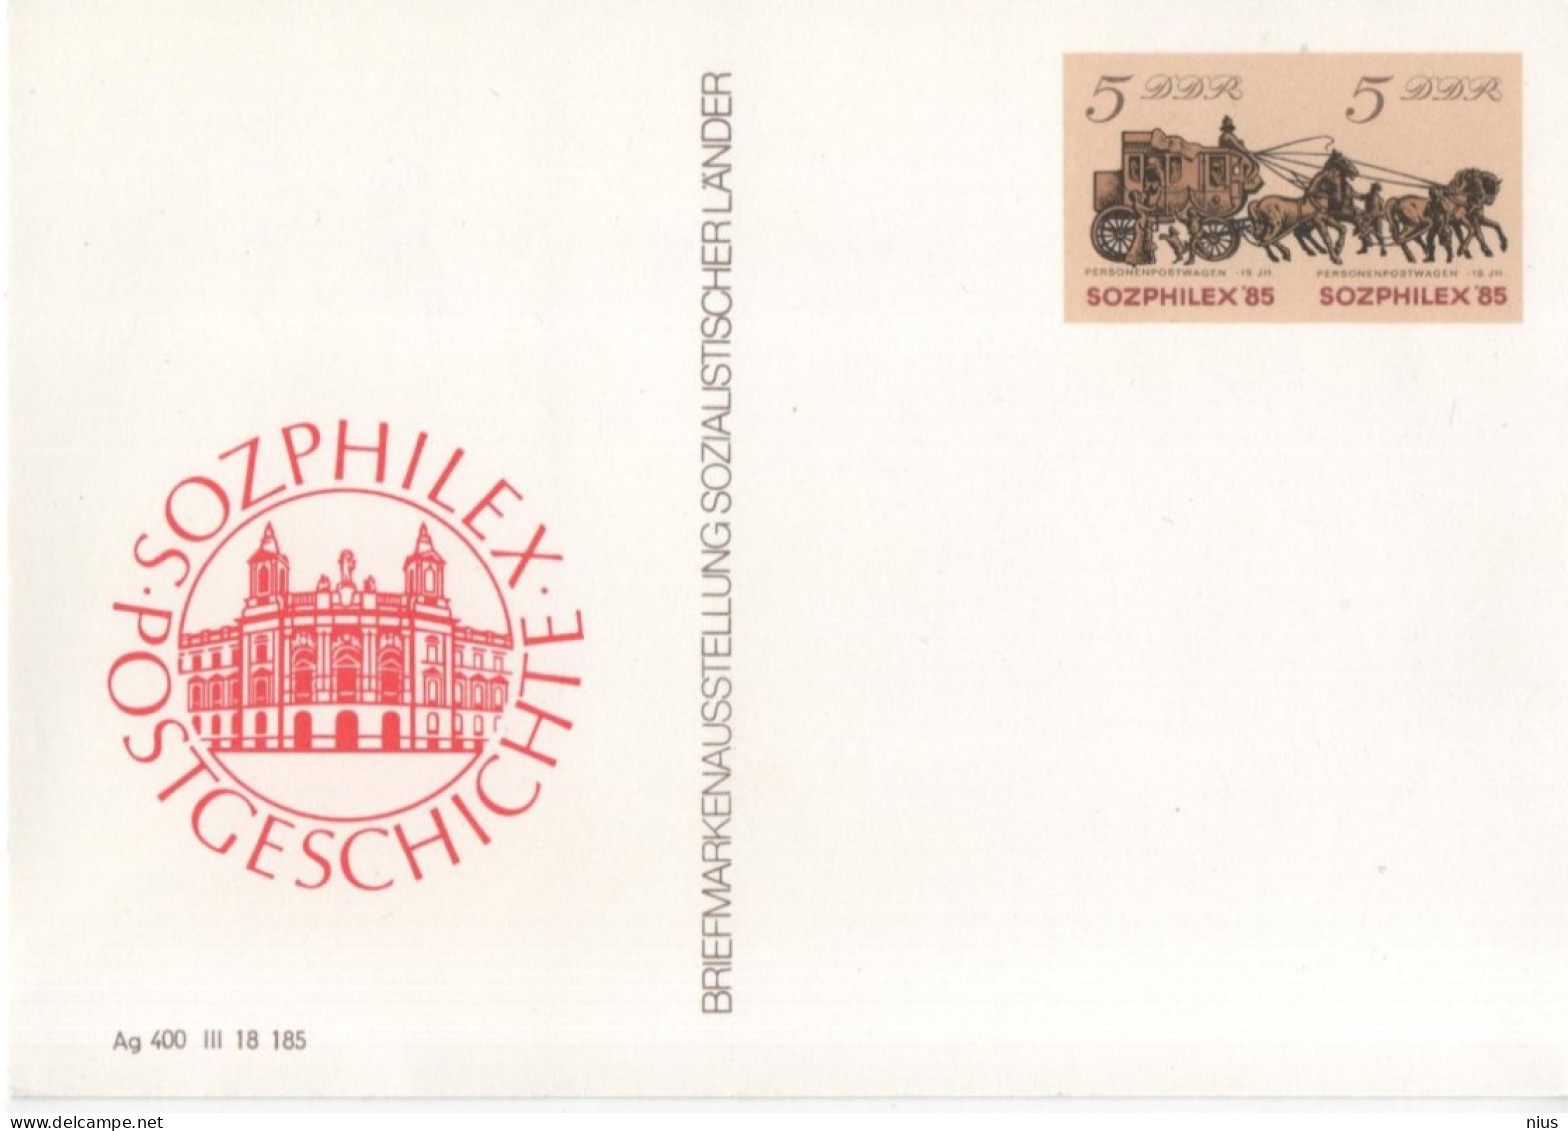 Germany DDR 1985 Briefmarkenausstellung Sozialistischer Lander Stamp Exhibition Of Socialist Countries, SOZPHILEX'85 - Postales - Nuevos